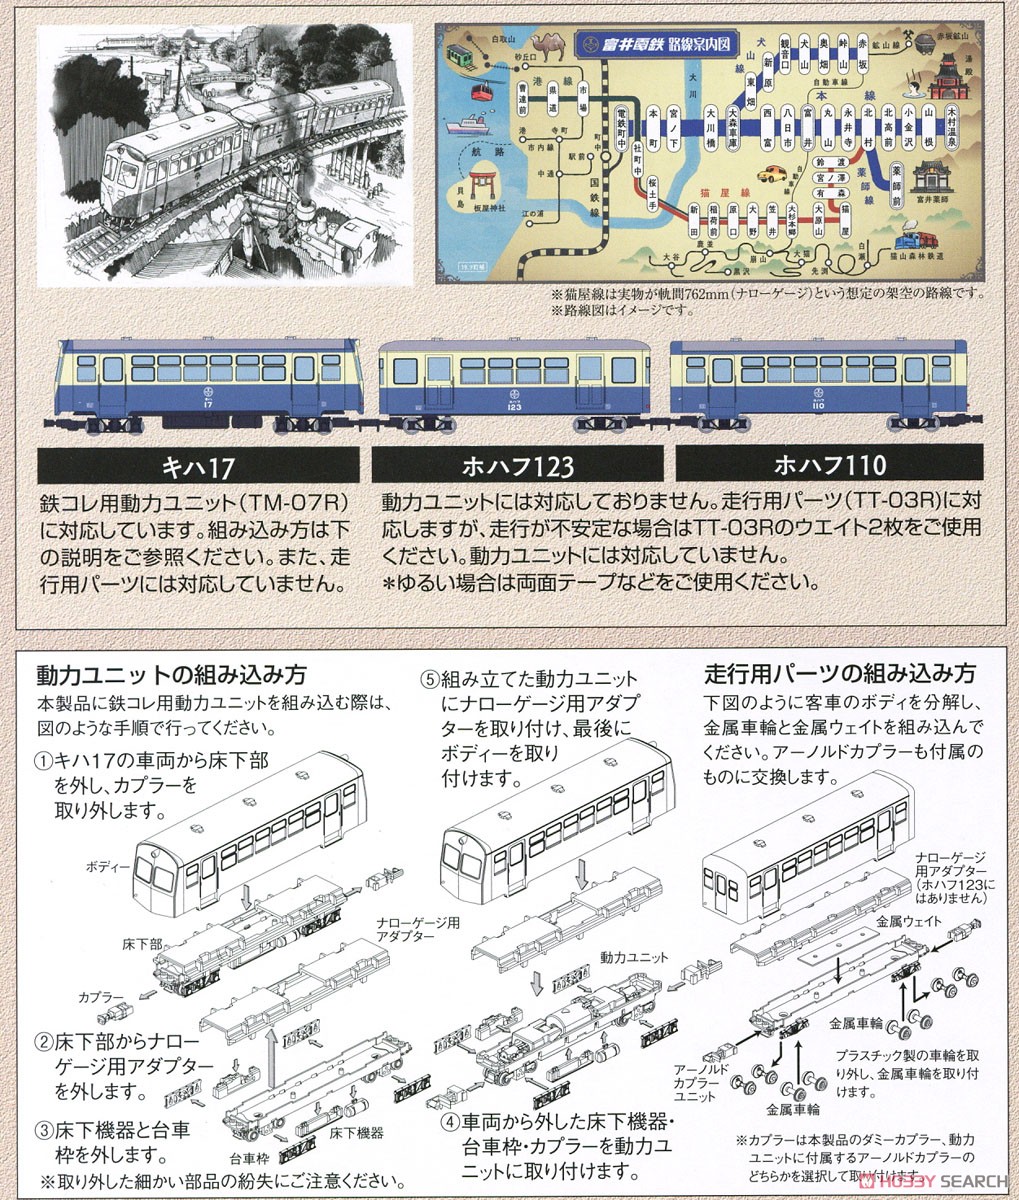 鉄道コレクション ナローゲージ80 富井電鉄 猫屋線 キハ17・ホハフ123・ホハフ110形 新塗装 (3両セット) (鉄道模型) 解説1